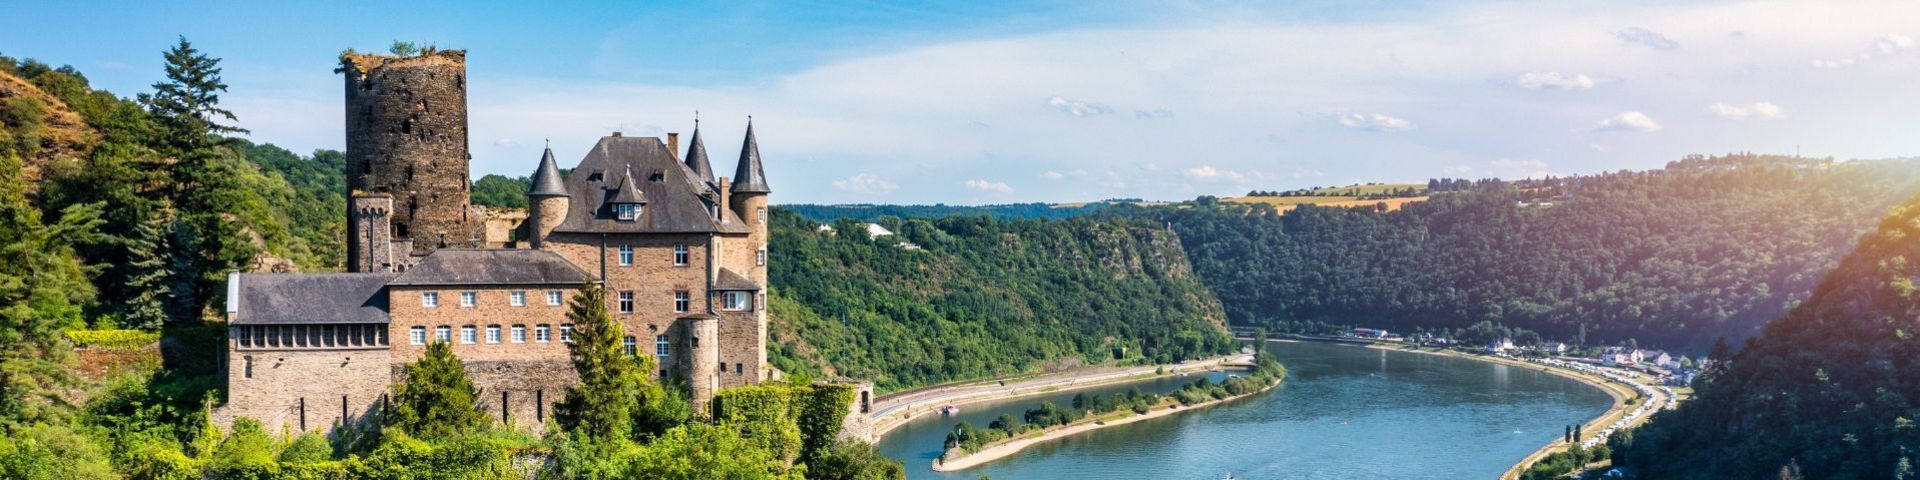 Burg am Rhein bei einer Flussreise mit sz-Reisen